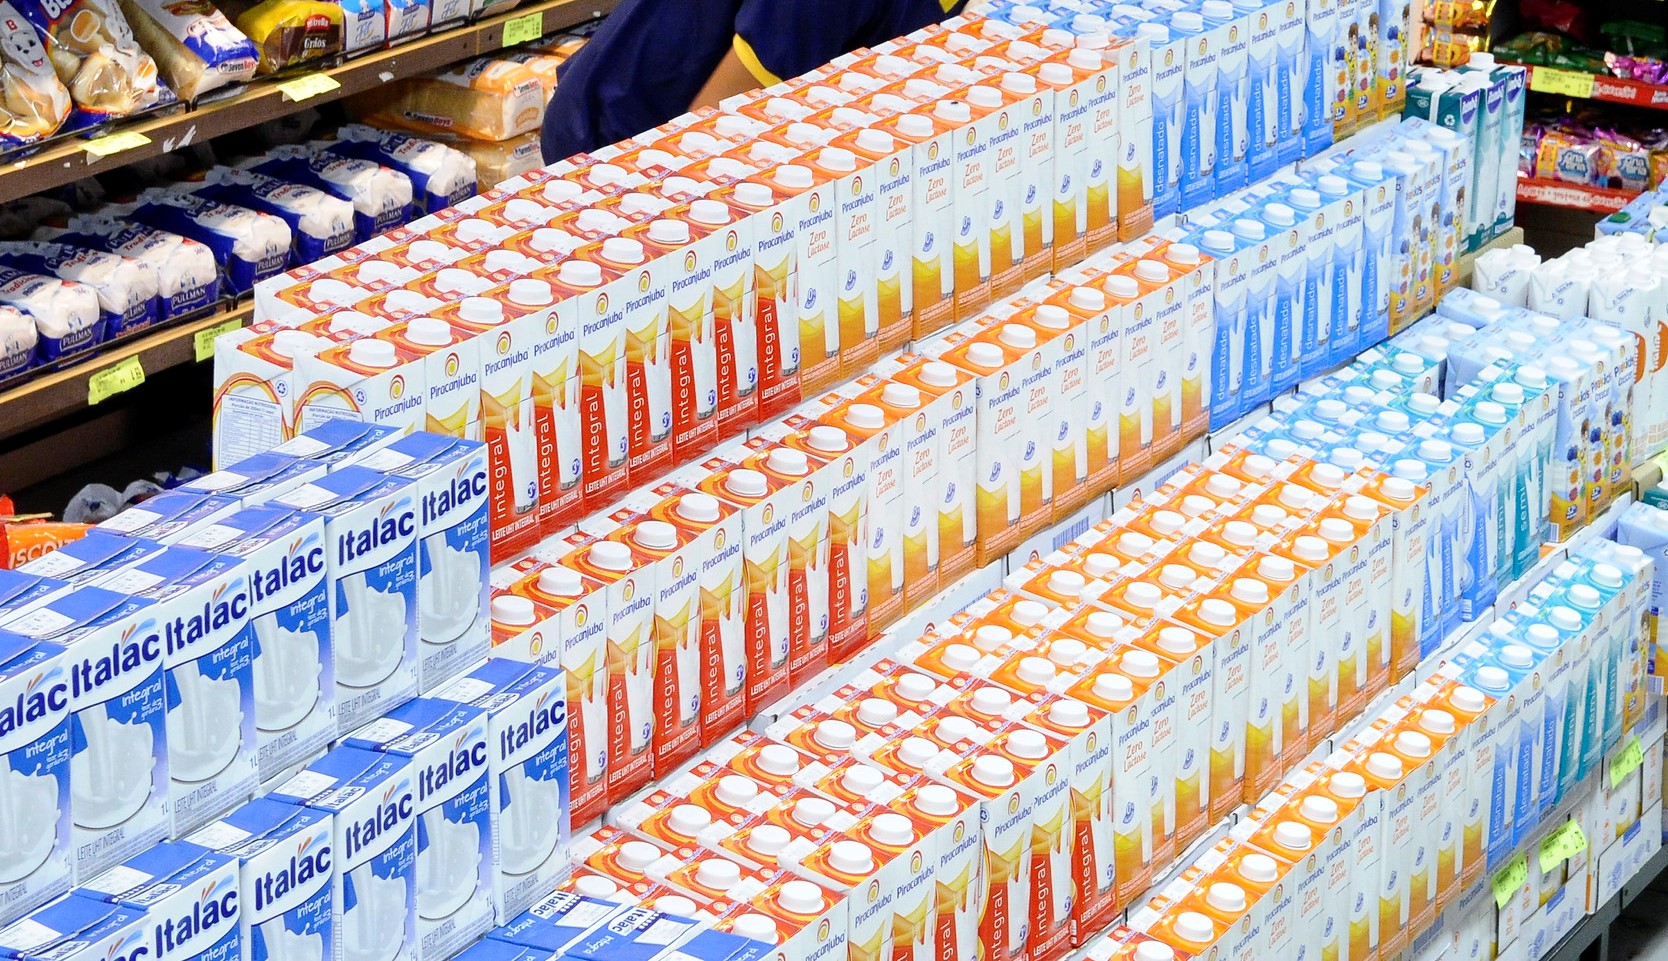 Boletim de Mercado do Setor Lácteo Goiano revela aumento do preço médio de derivados lácteos em maio